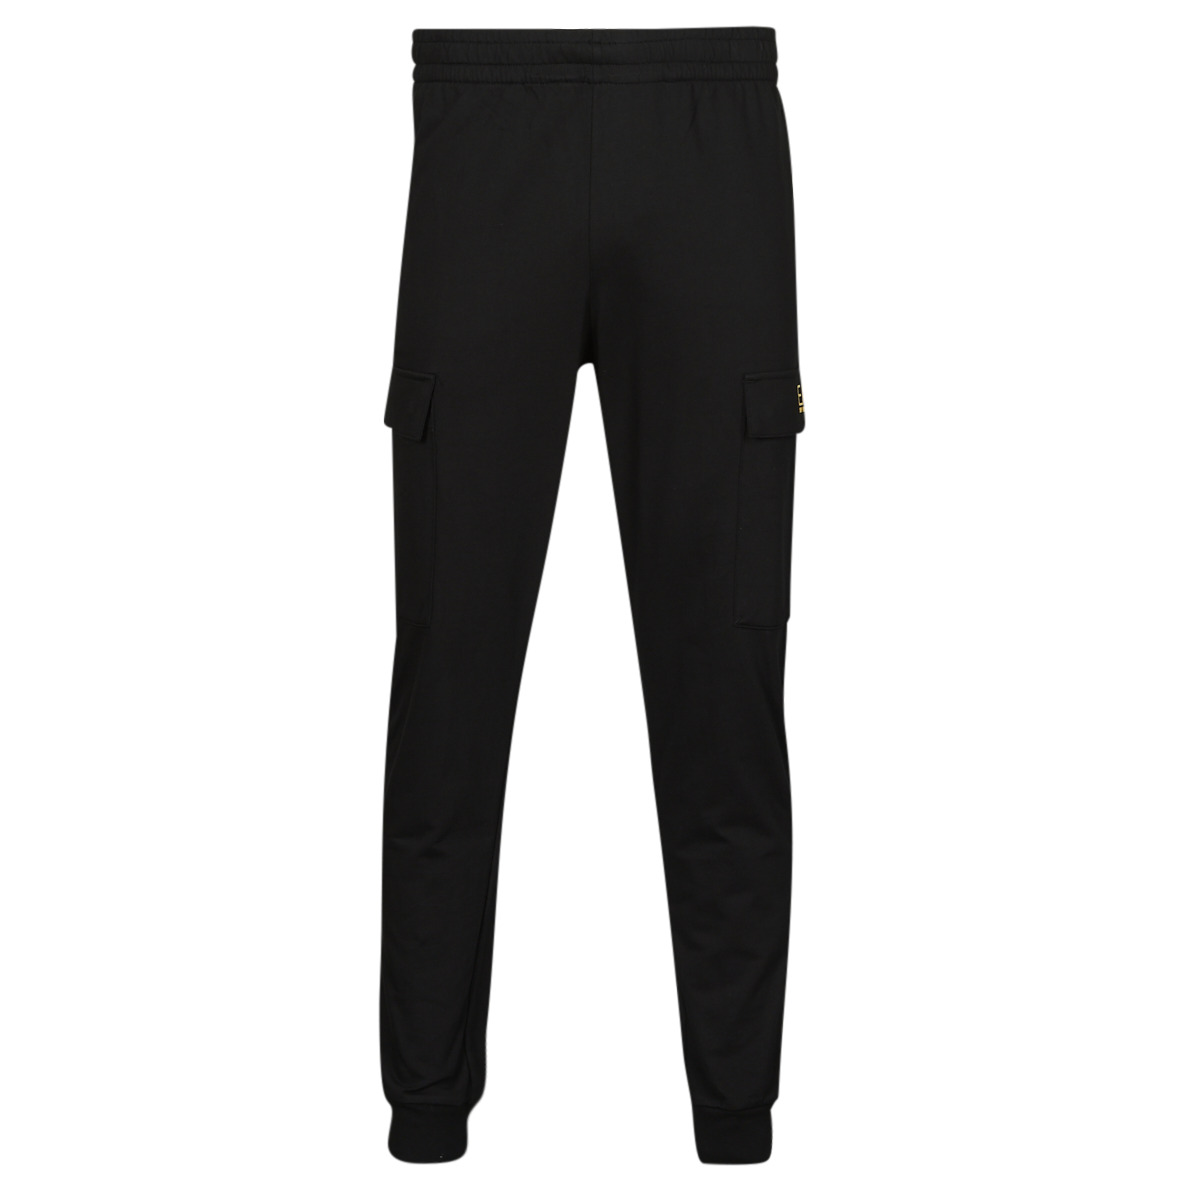 emporio armani ea7  core identity pant 8npp59  men's sportswear in black